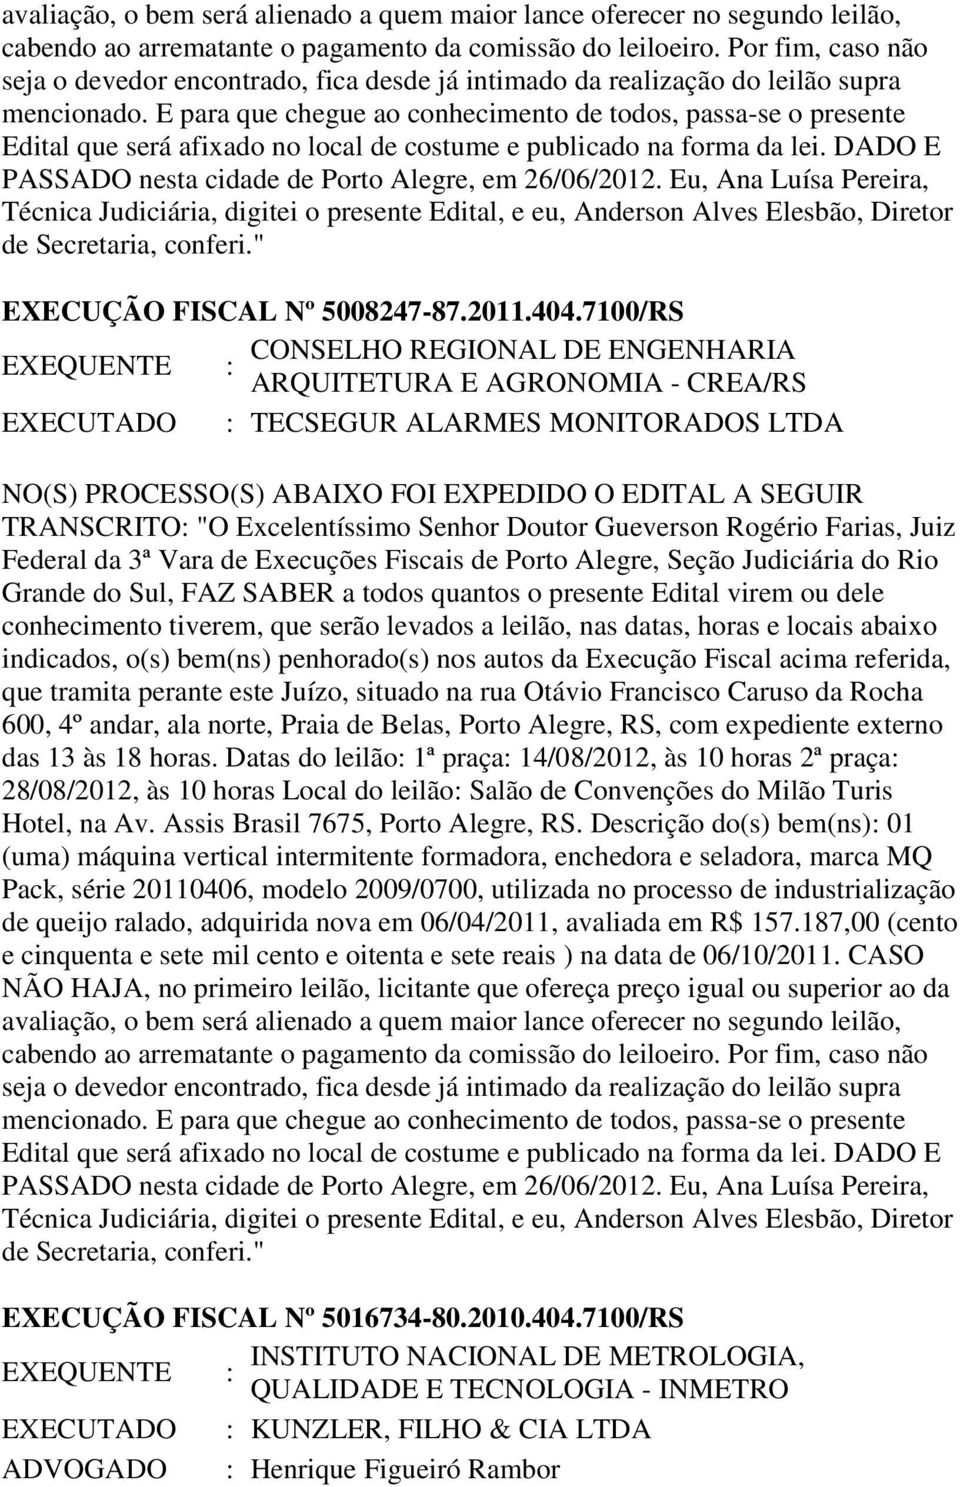 E para que chegue ao conhecimento de todos, passa-se o presente Edital que será afixado no local de costume e publicado na forma da lei. DADO E PASSADO nesta cidade de Porto Alegre, em 26/06/2012.